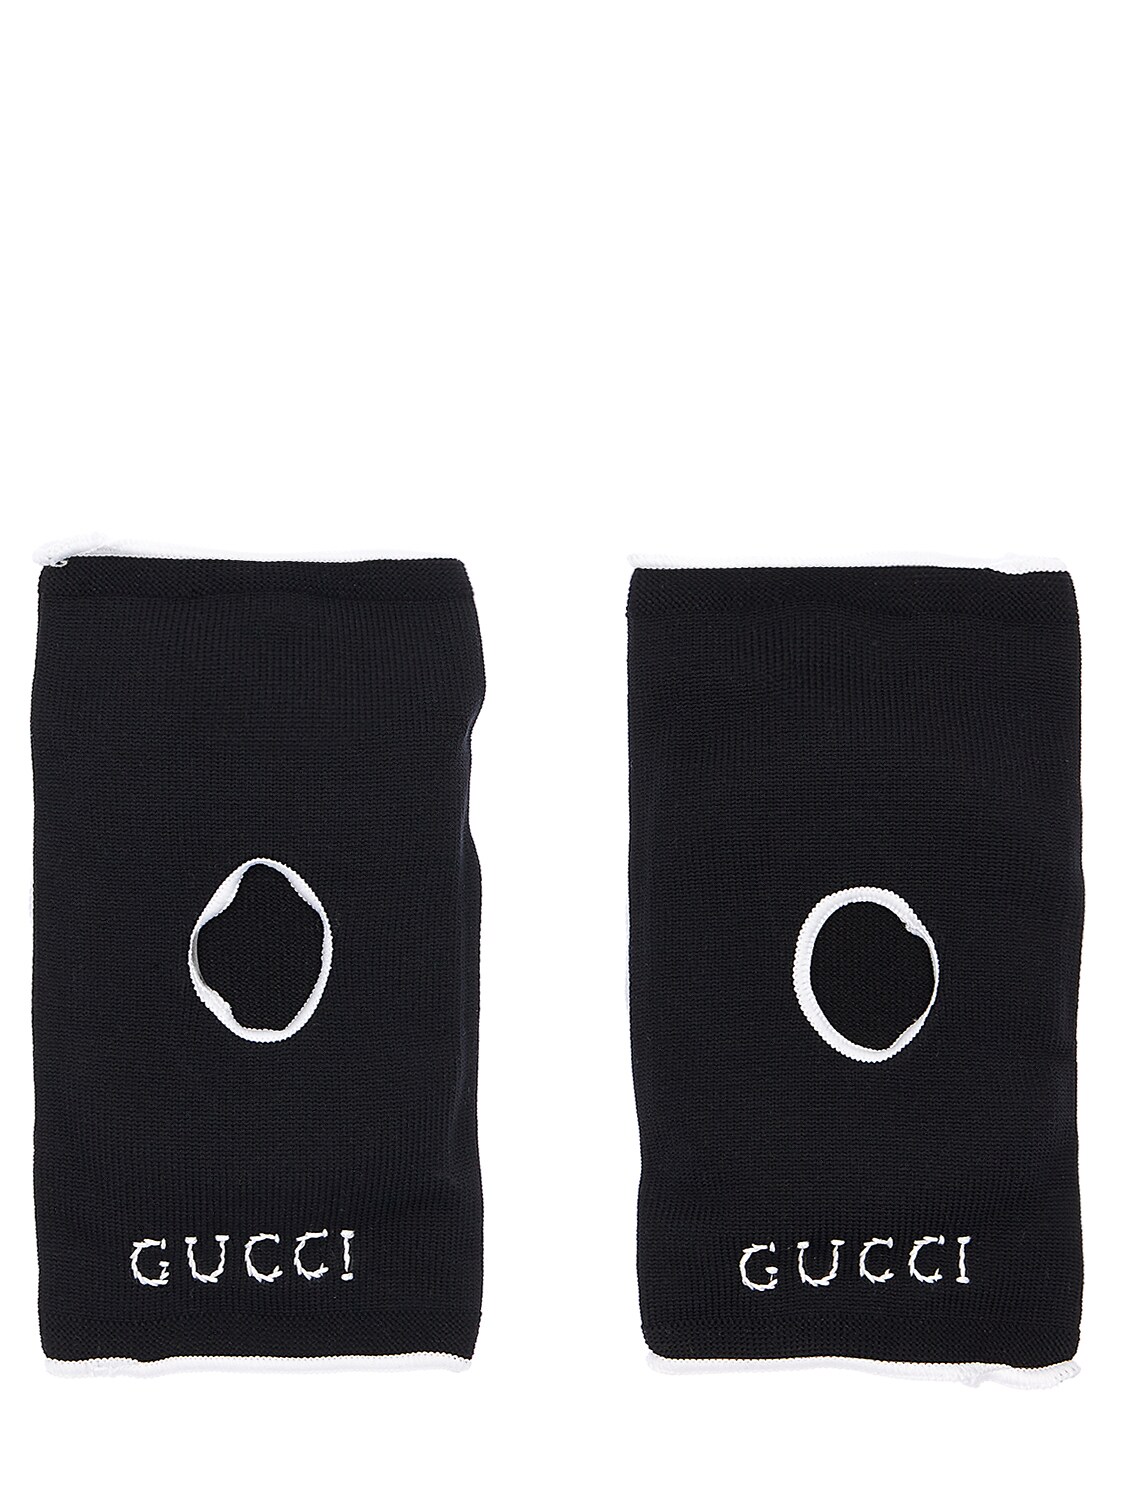 Gucci Gg科技面料护膝 In Black